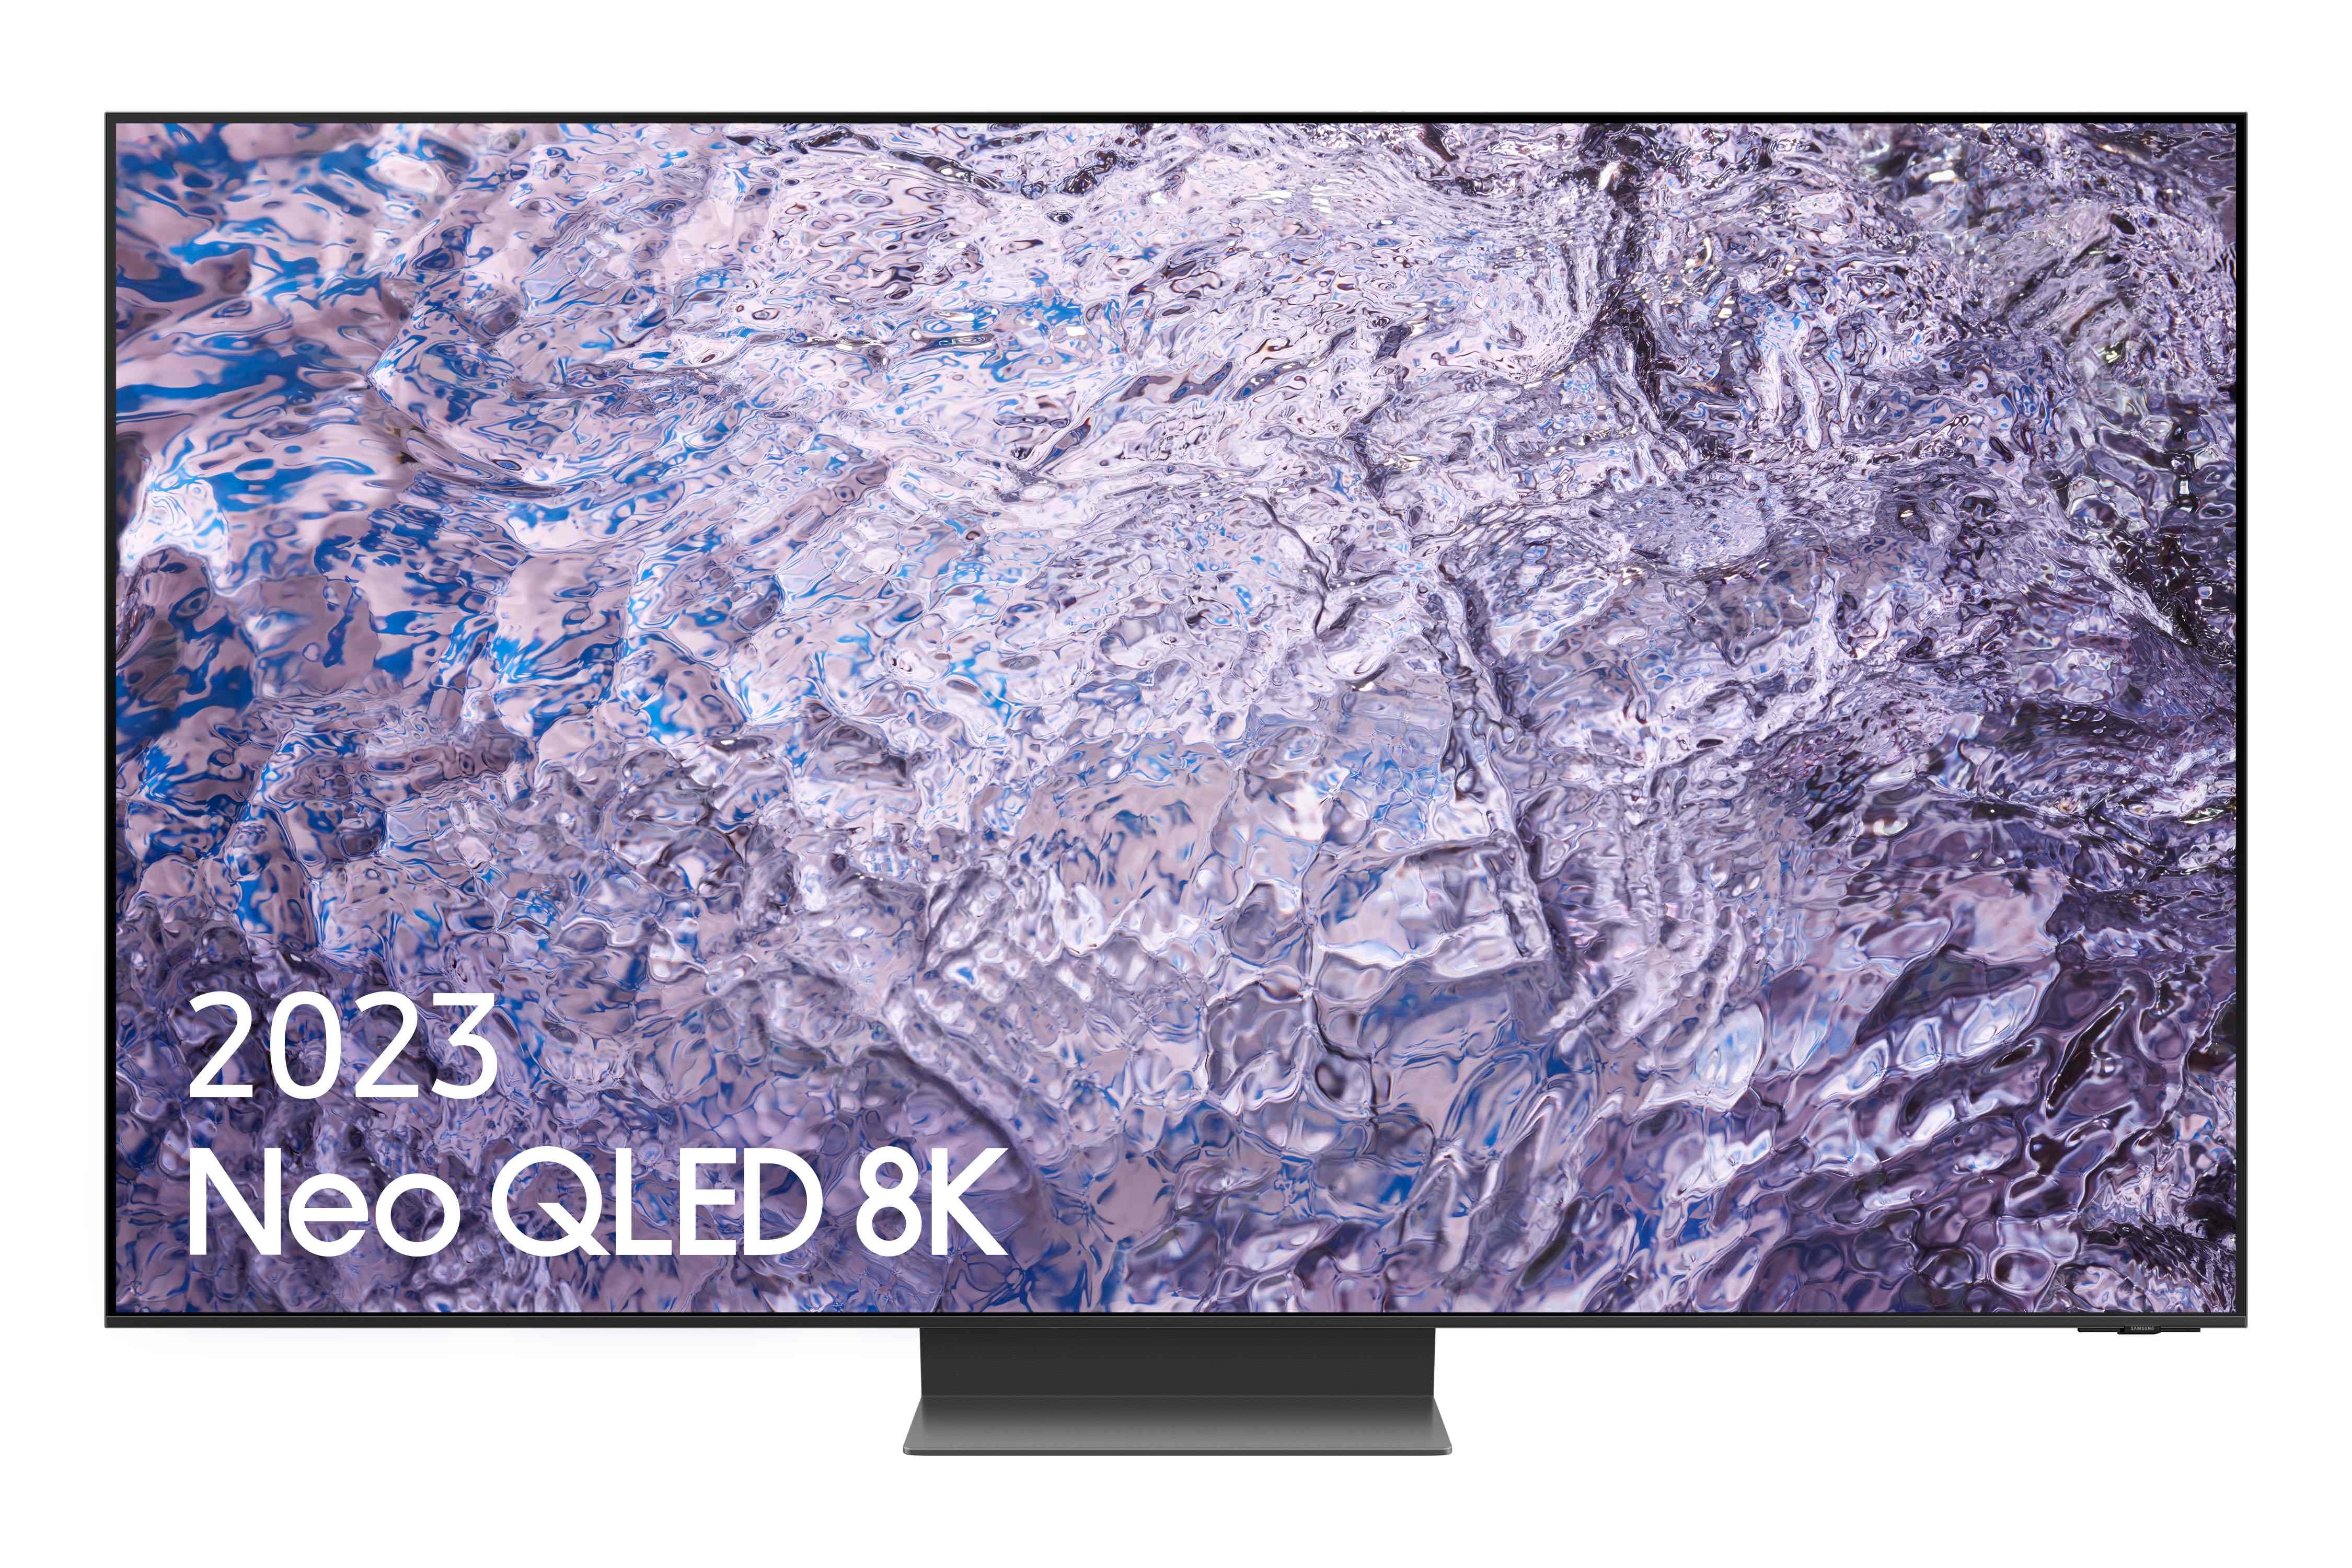 Samsung TV QN800C Neo QLED 163cm 65" Smart TV (2022) - Black Titanium, Black Titanium